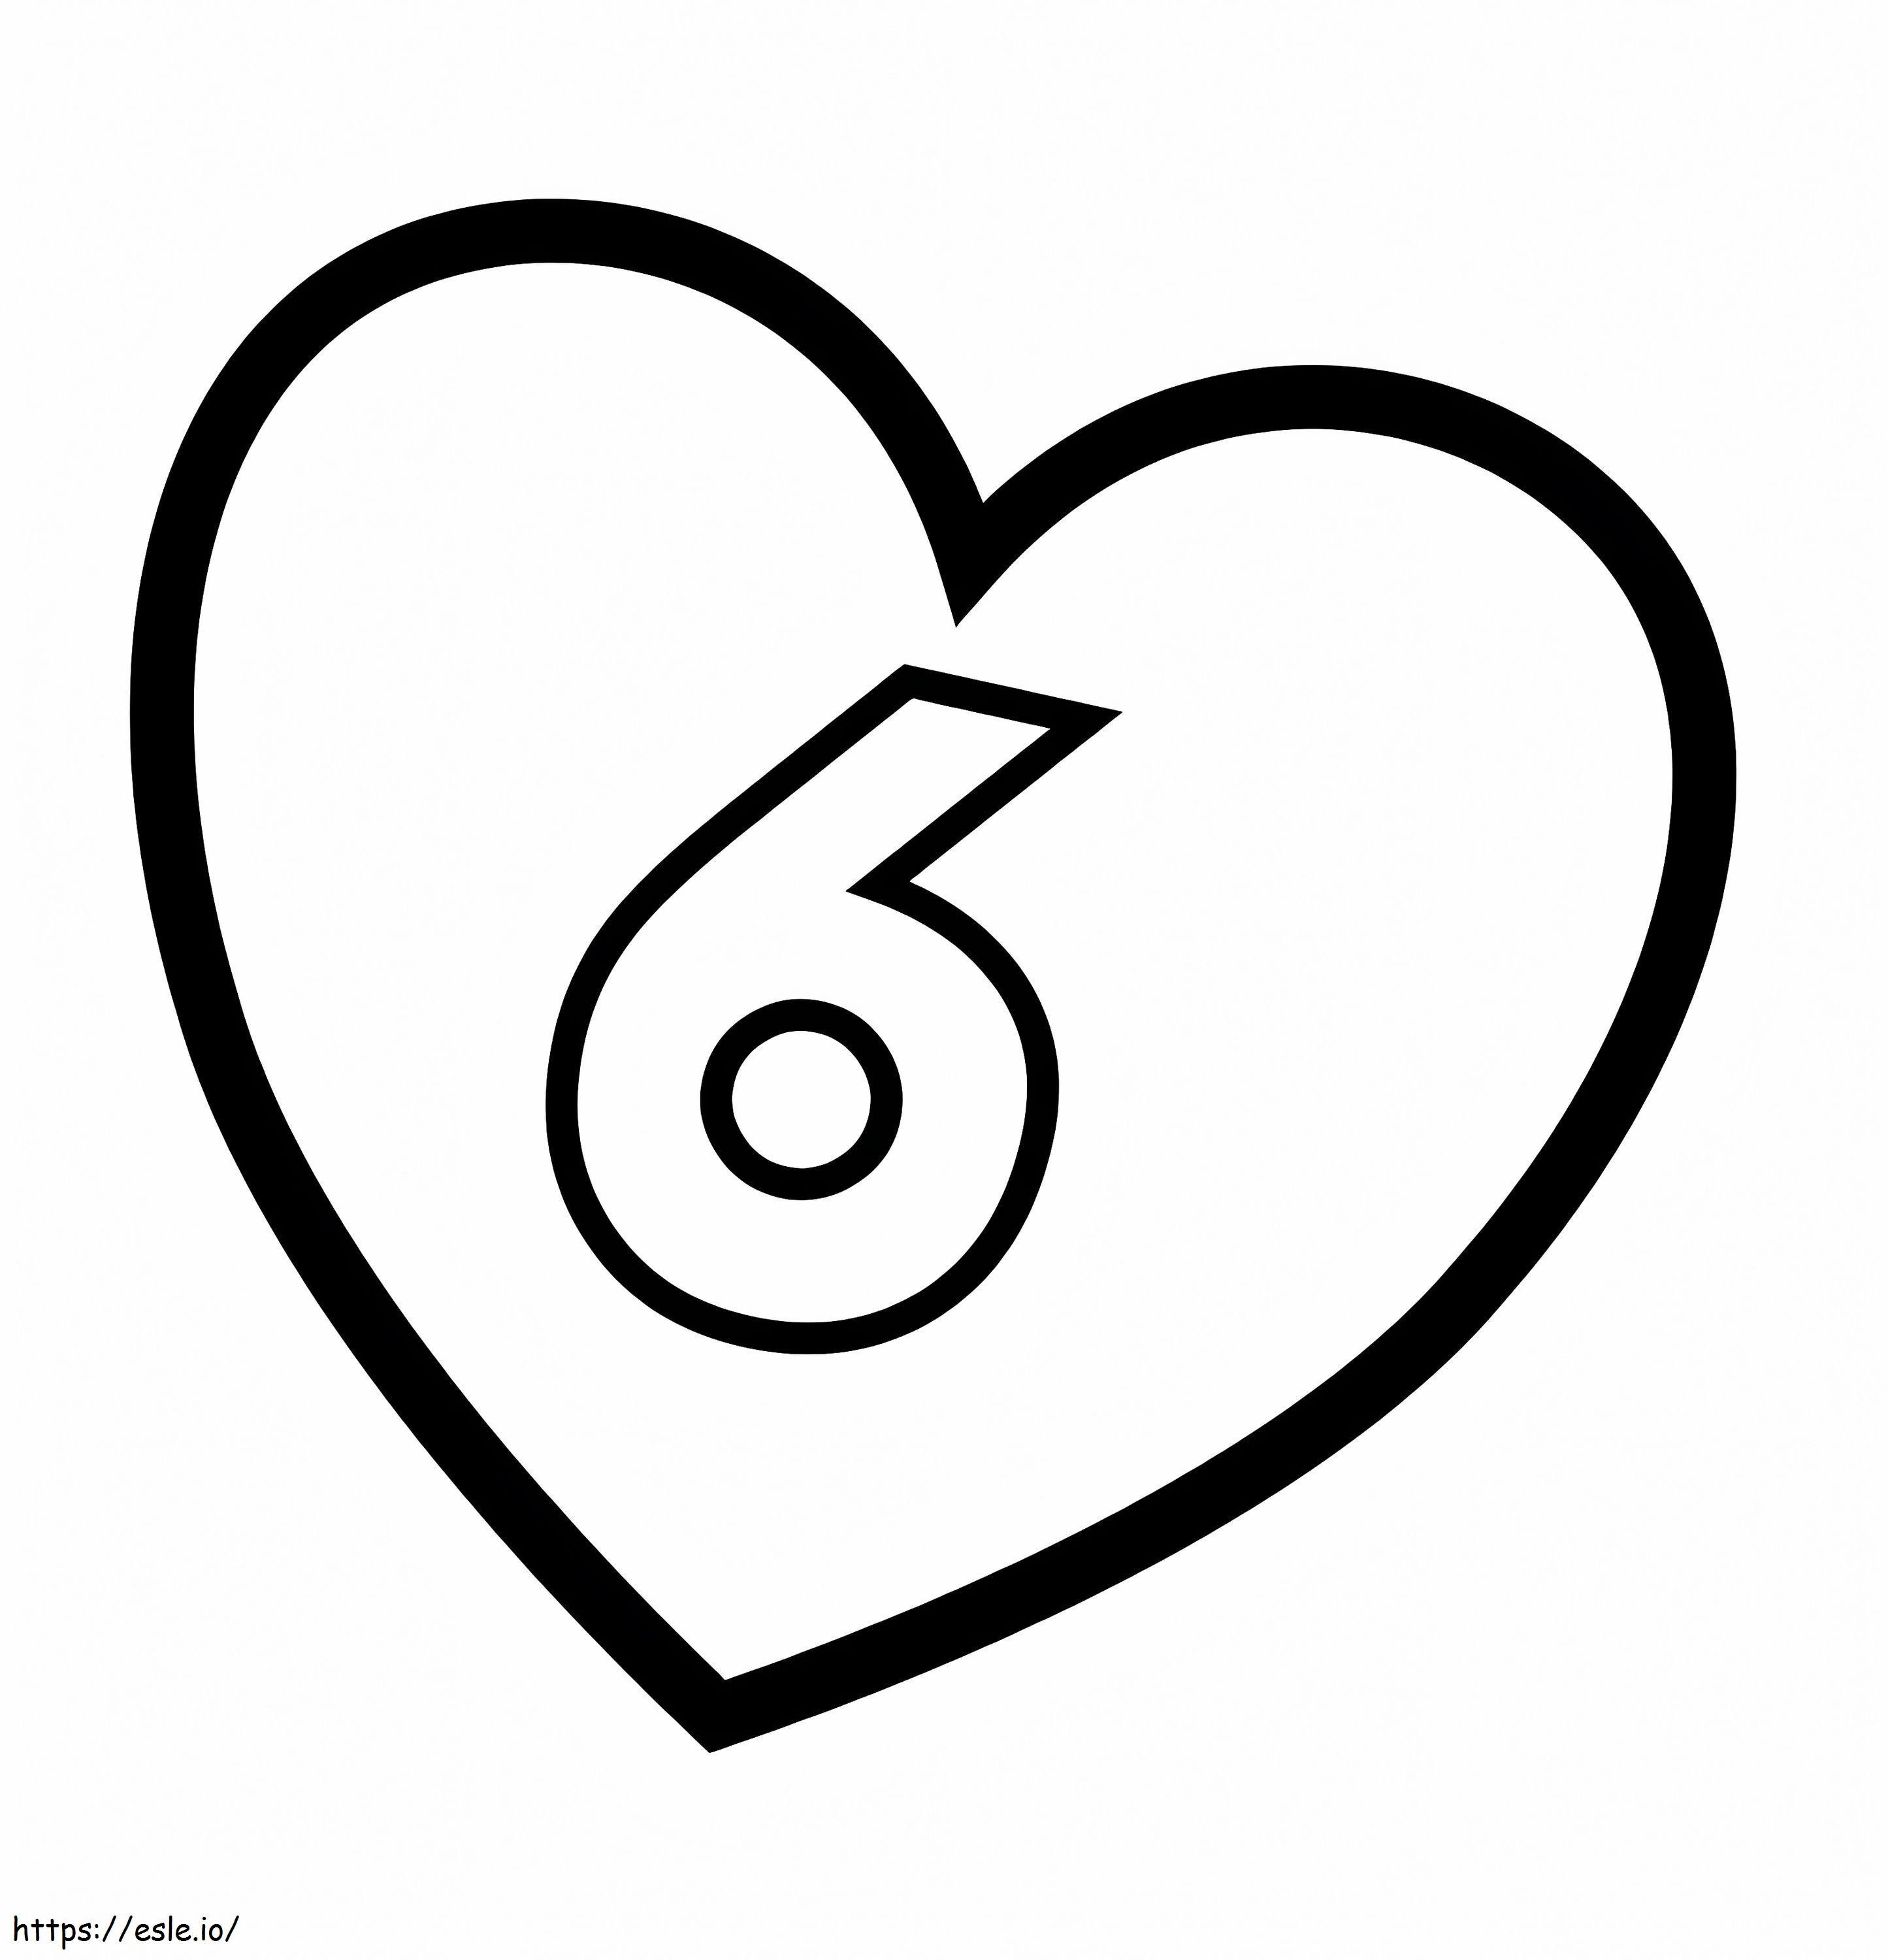 6. szám a szívben kifestő